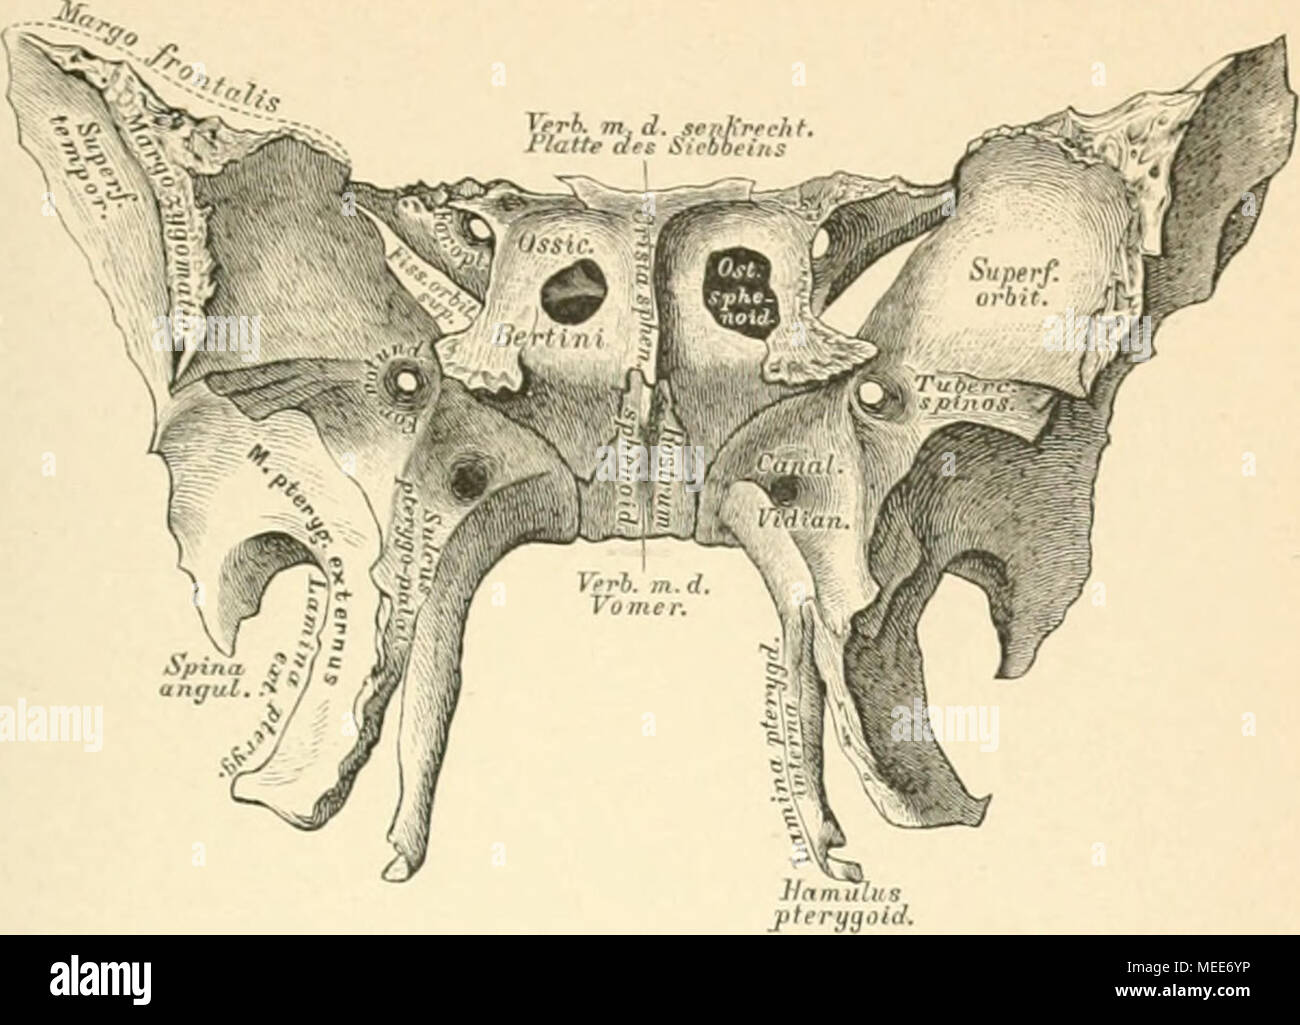 Die descriptive und topographische Anatomie des Menschen . .*». Keilbein,  Os sphenoidale, von vorne. Körper. An der vorderen Fläche zwei  unregelmassige Oeffnungen, Ostia sph noidalia, «reiche in die  Keilbeinhöhlen führen und